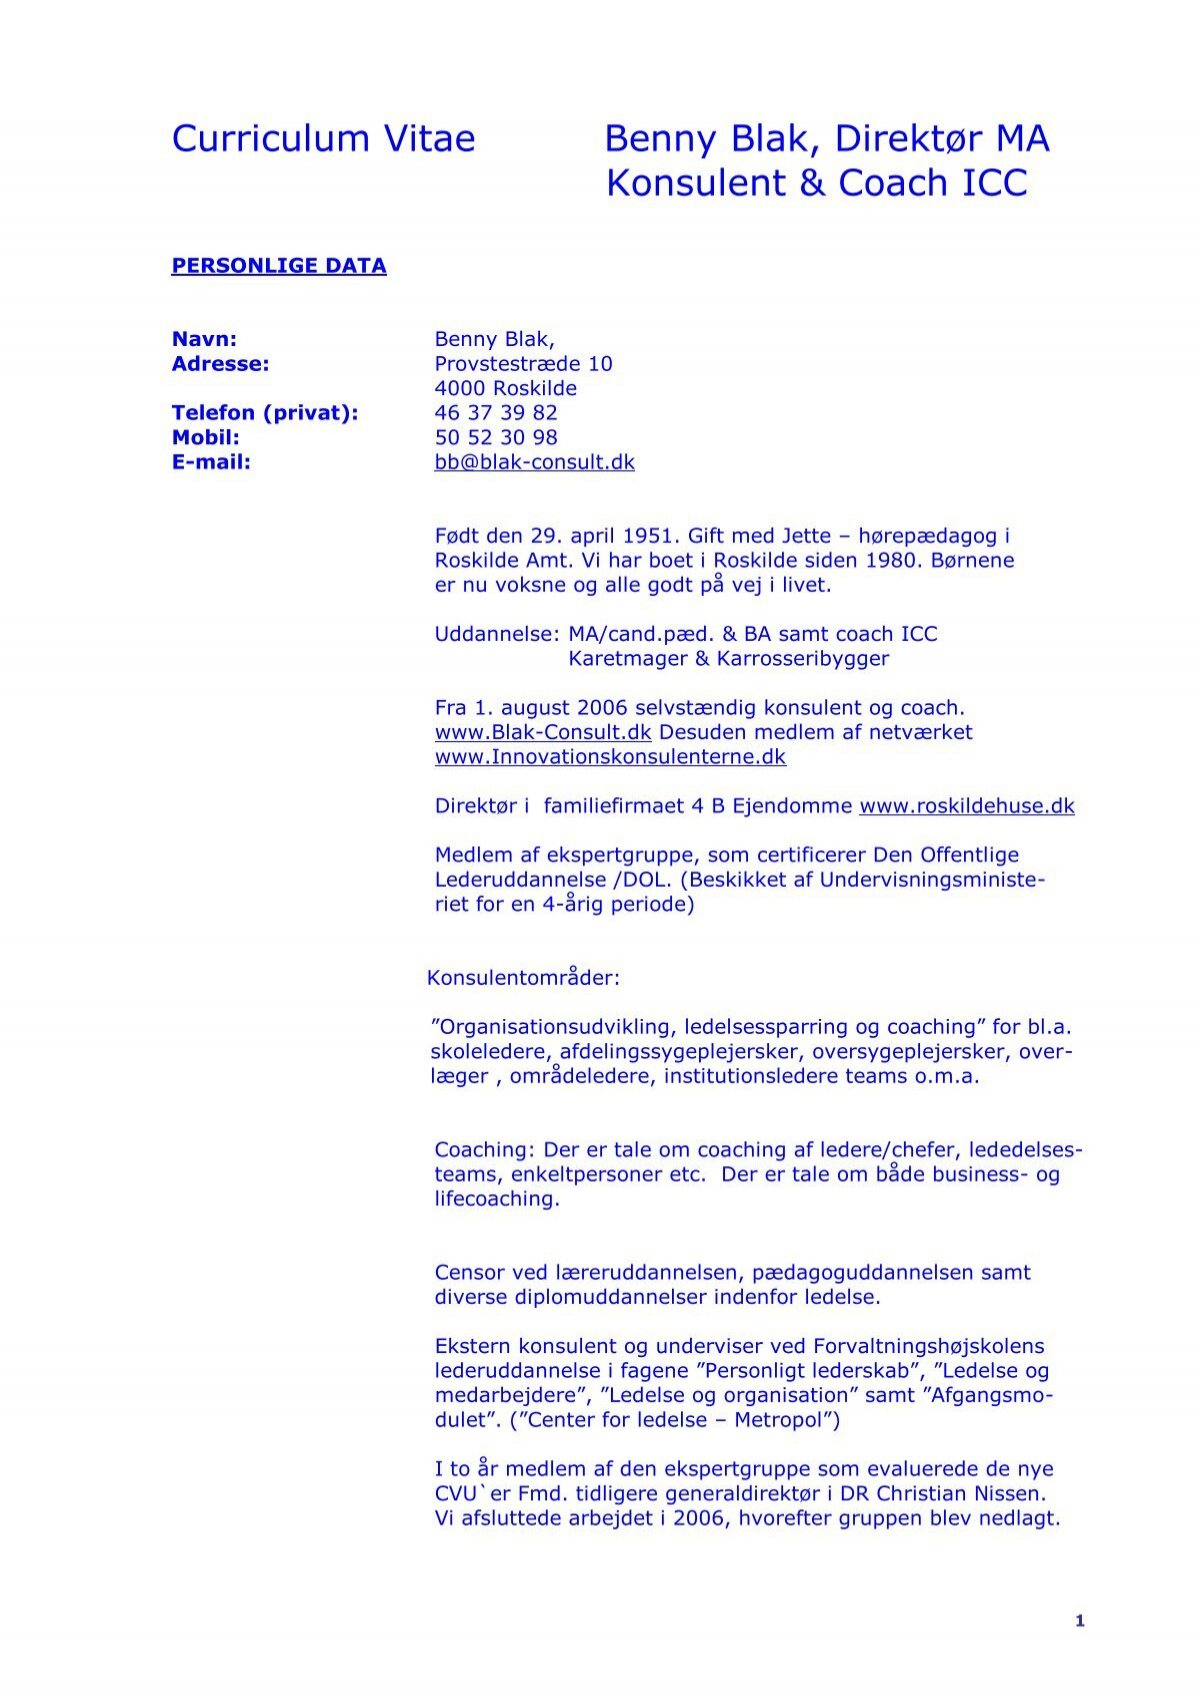 Curriculum Vitae (pdf) Blak-Consult.dk